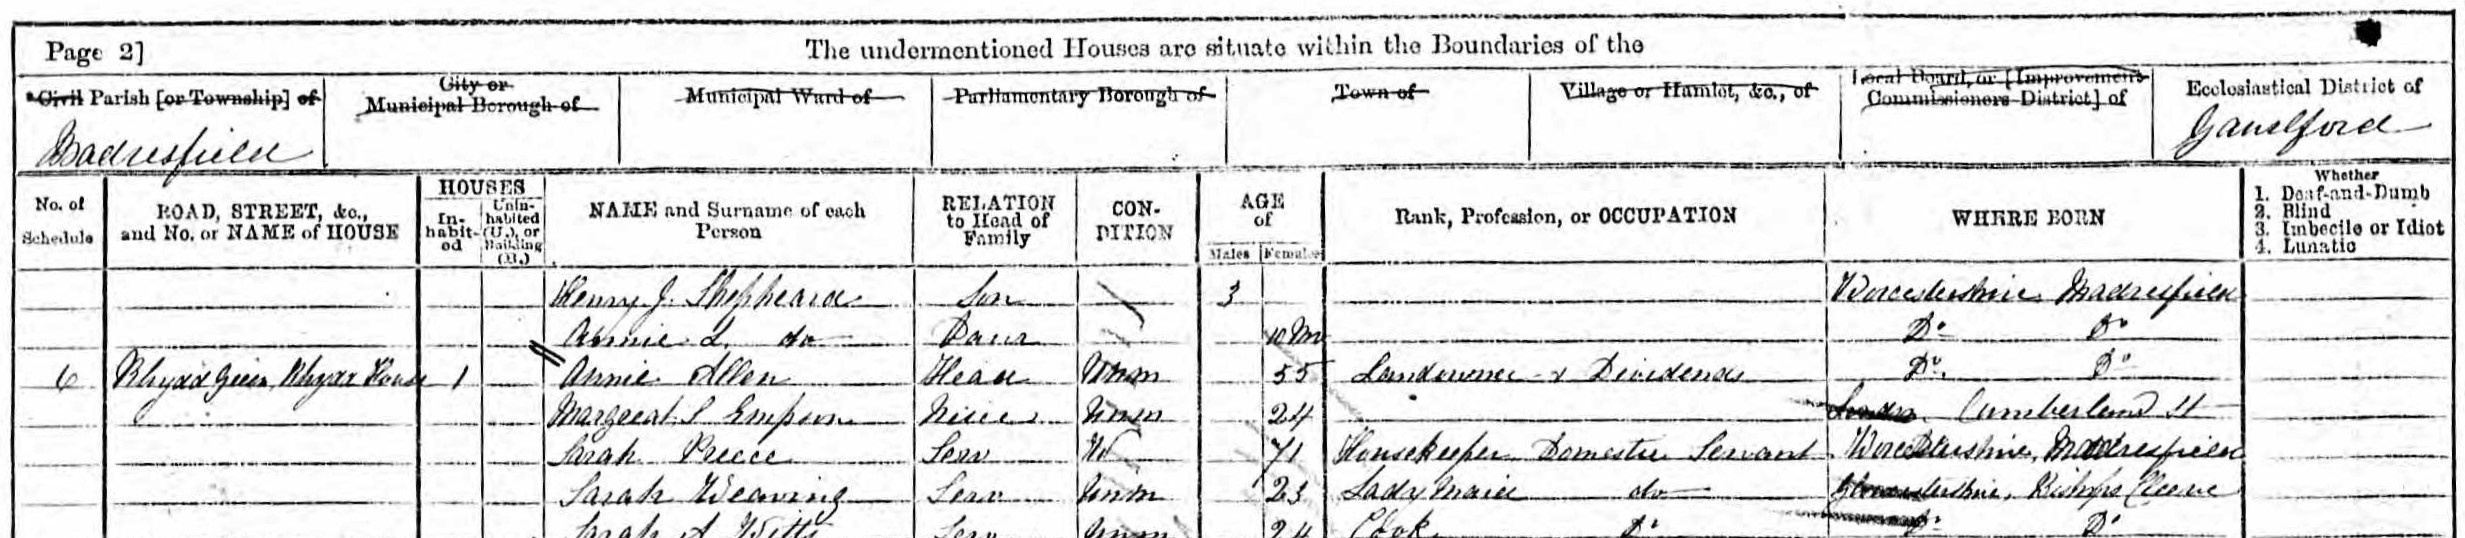 1871 Census showing Annie [Ann] Allen, sister of Isabella Ann Allen © Ancestry